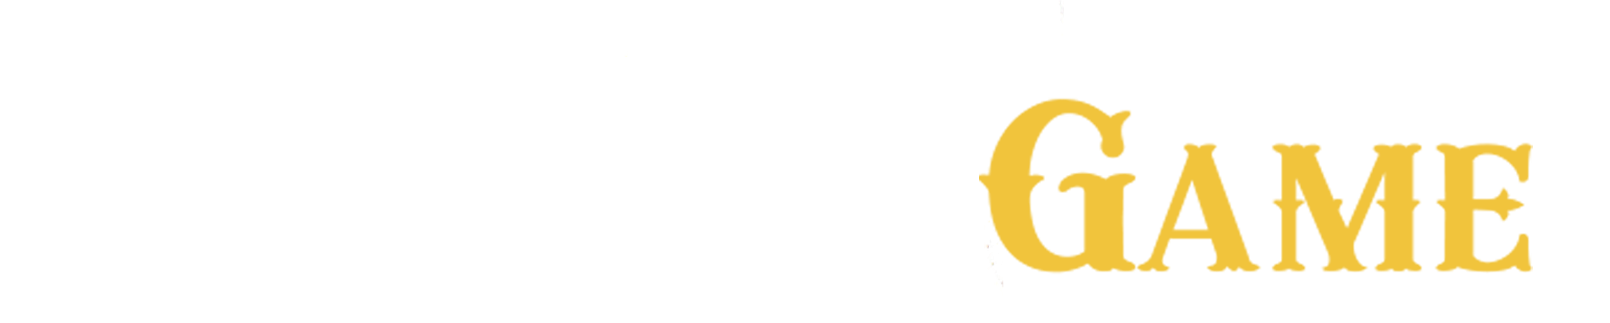 dreamgame logo